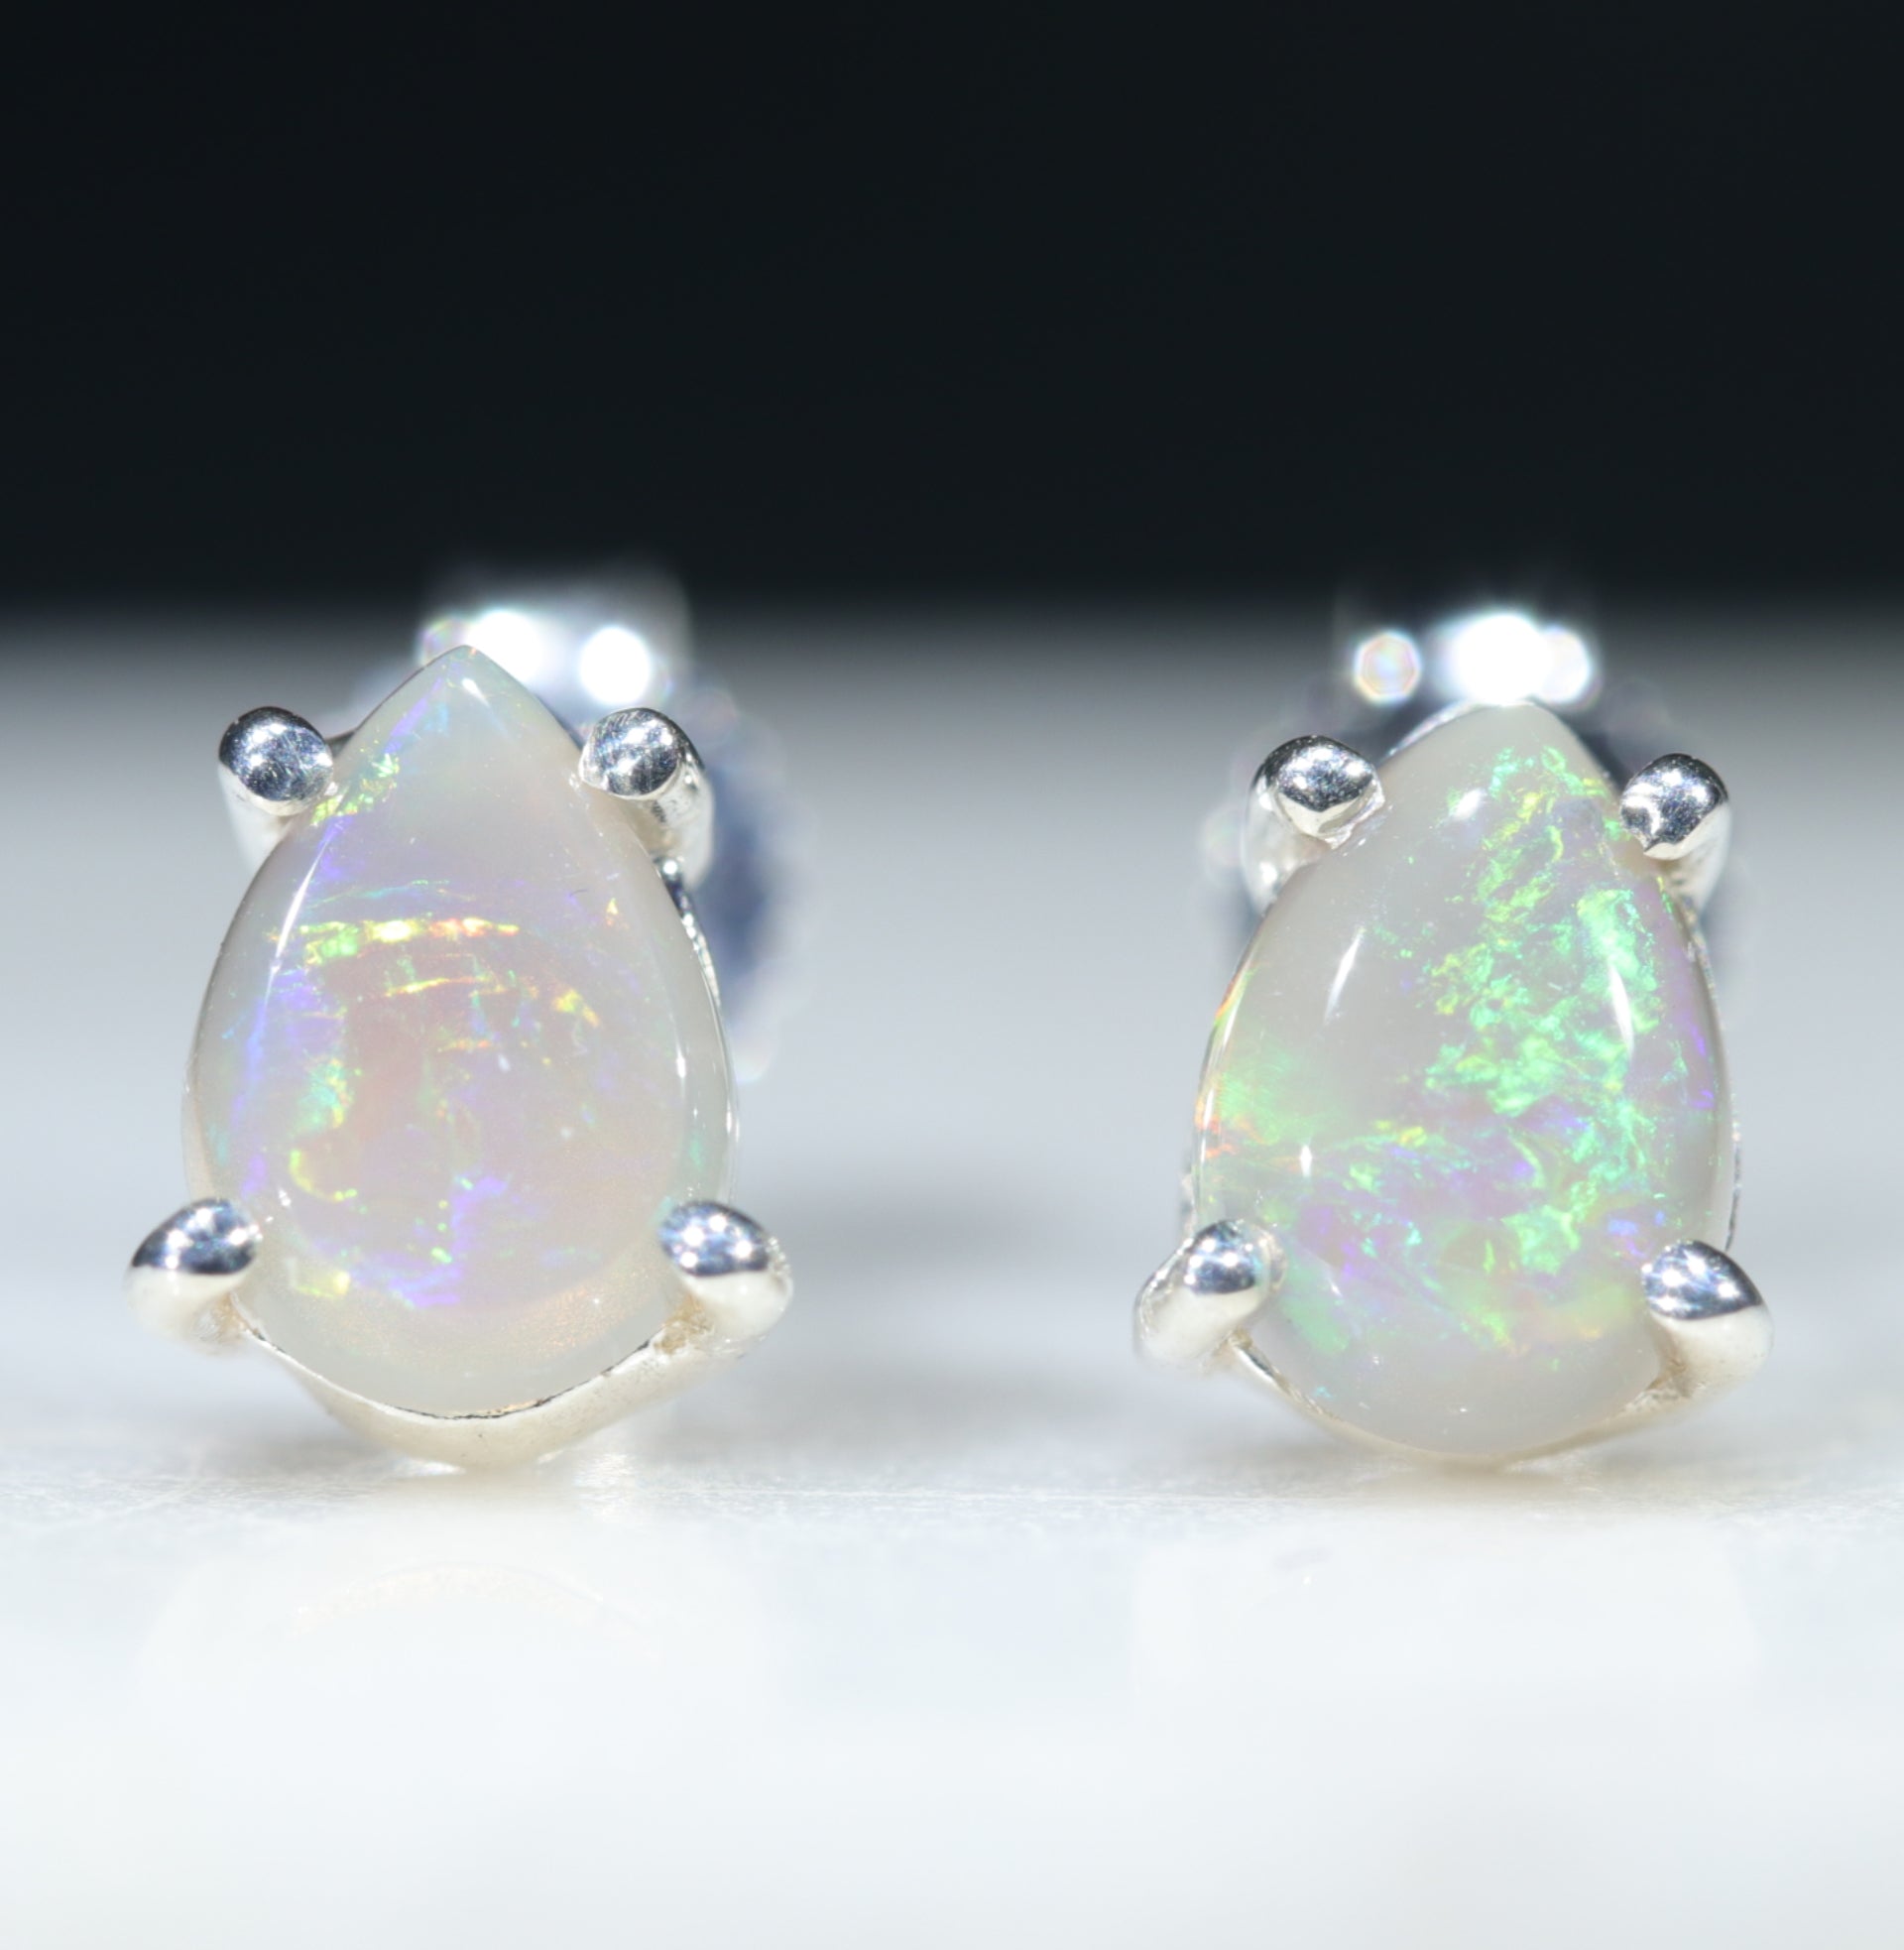 Tæt ugunstige konstant Australian Crystal Black Opal Earrings - Silver